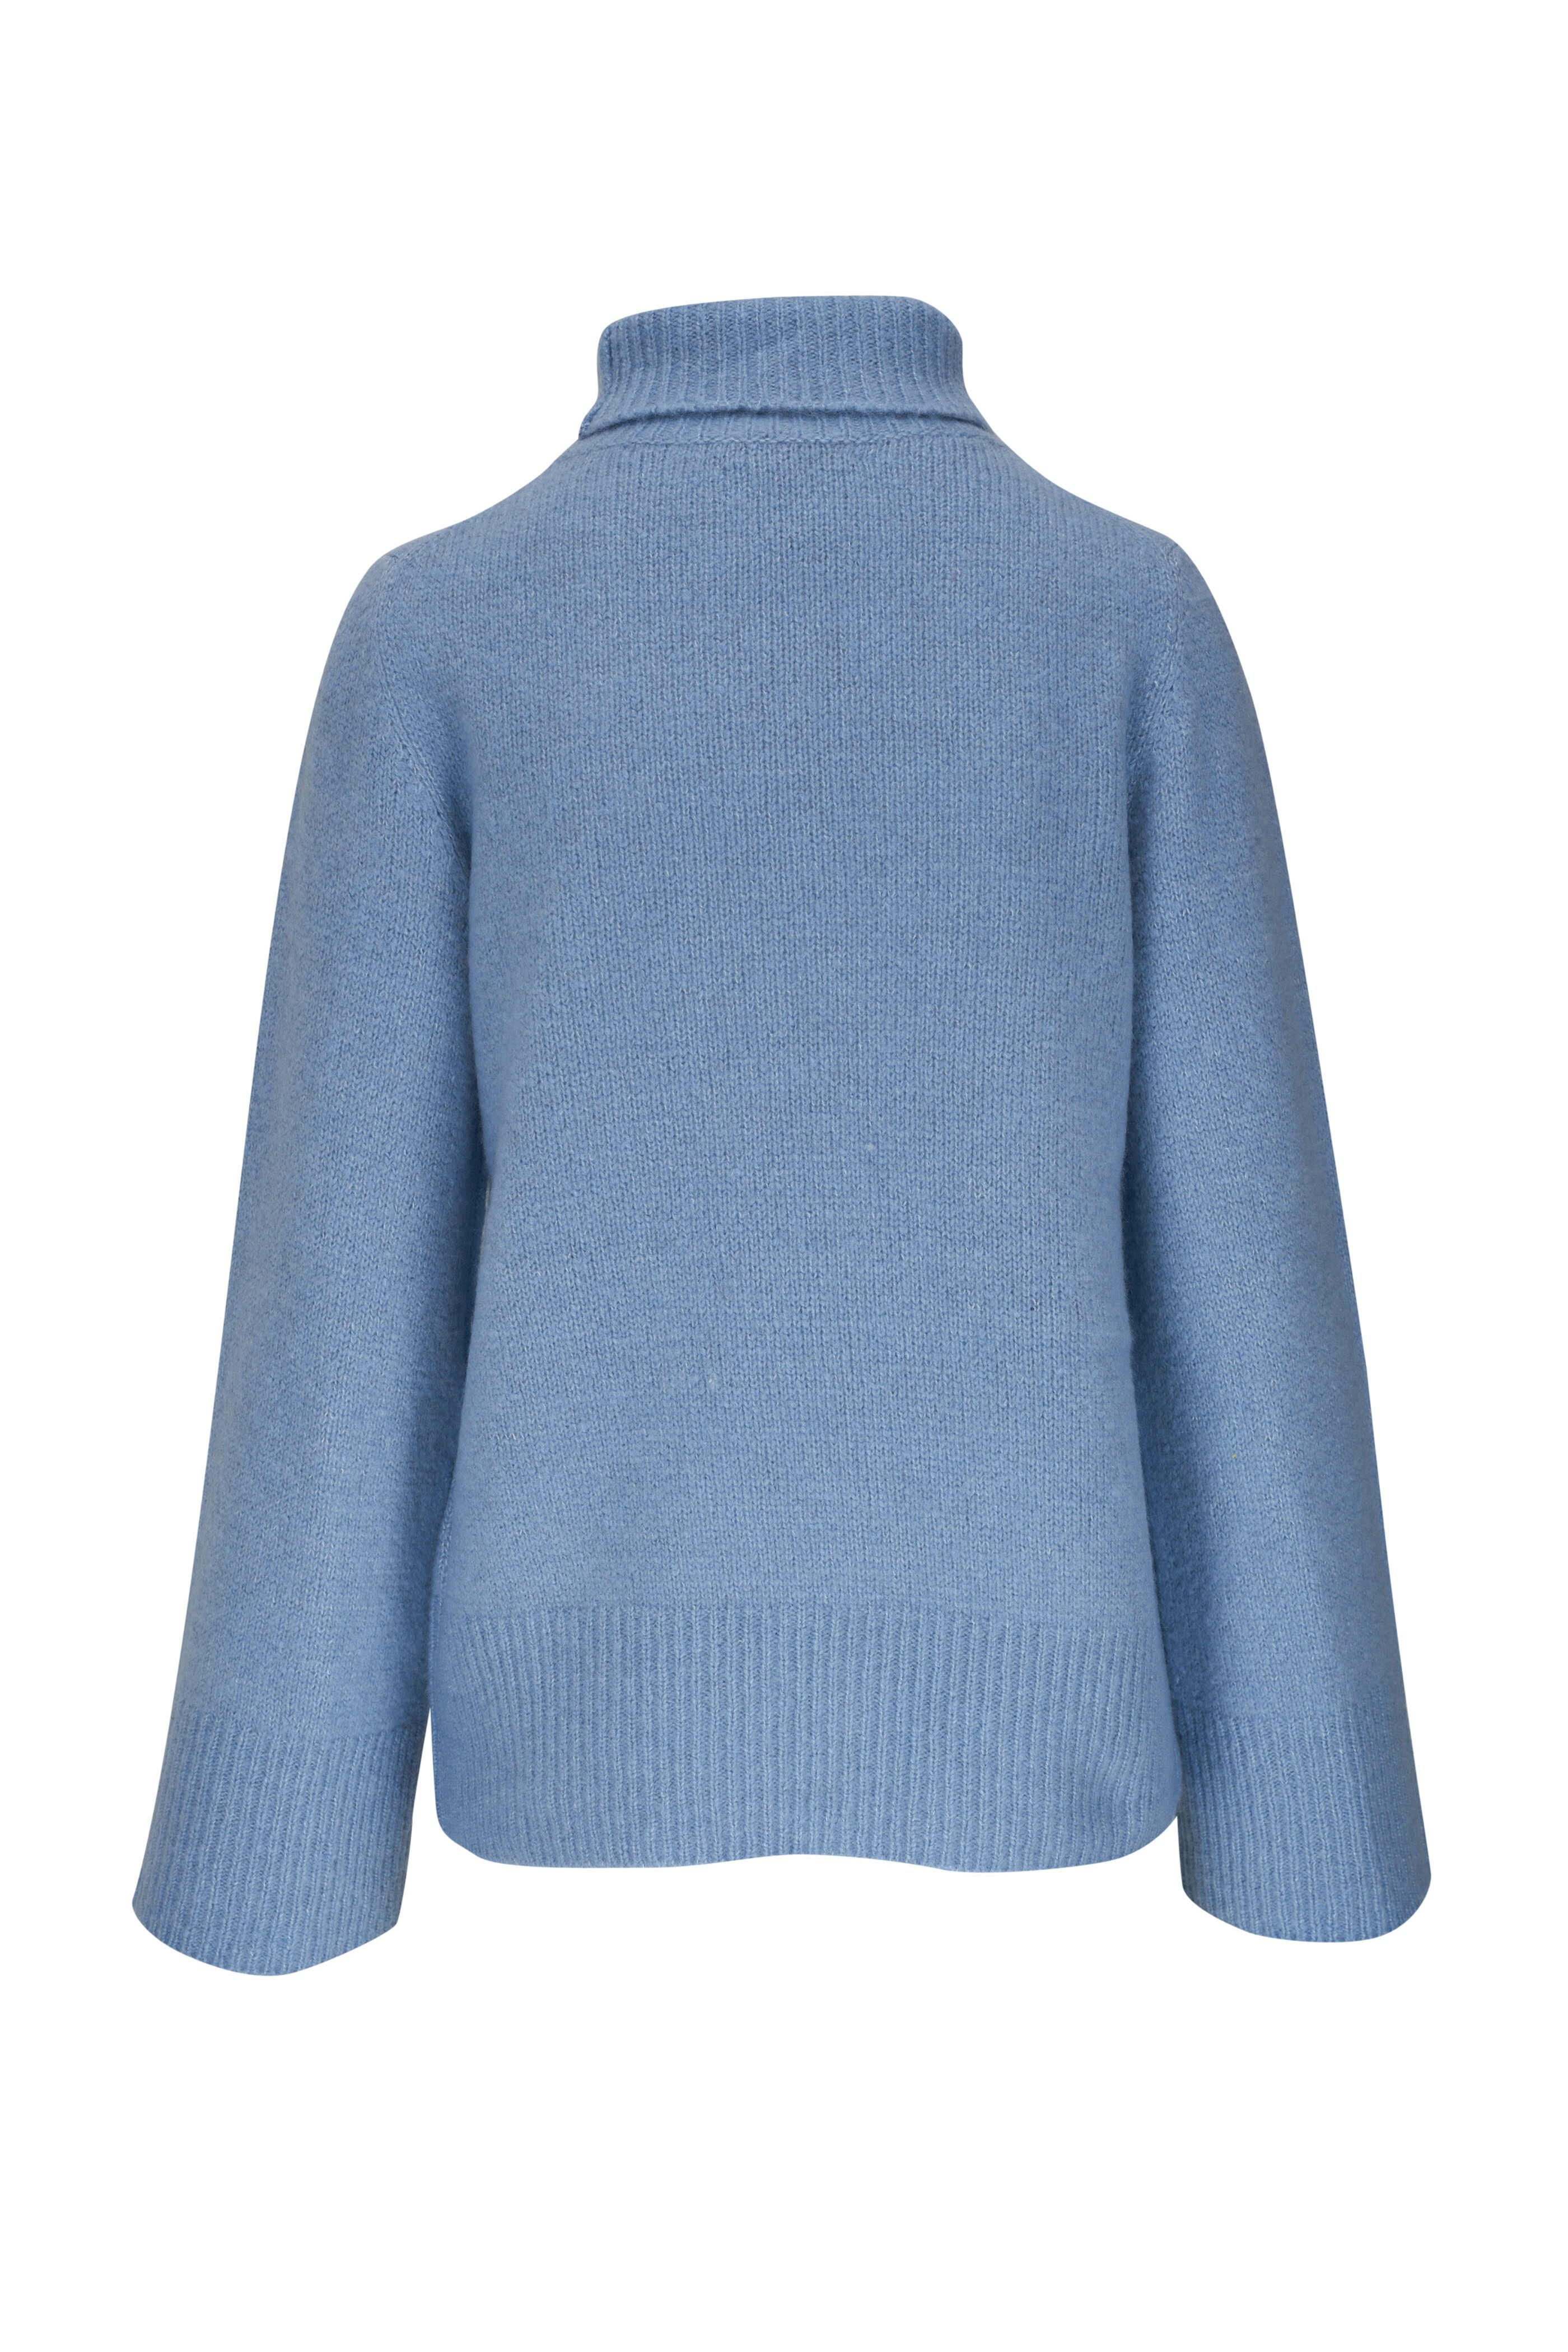 Dorothee Schumacher - Luxury Attraction Blue Cashmere & Silk Sweater